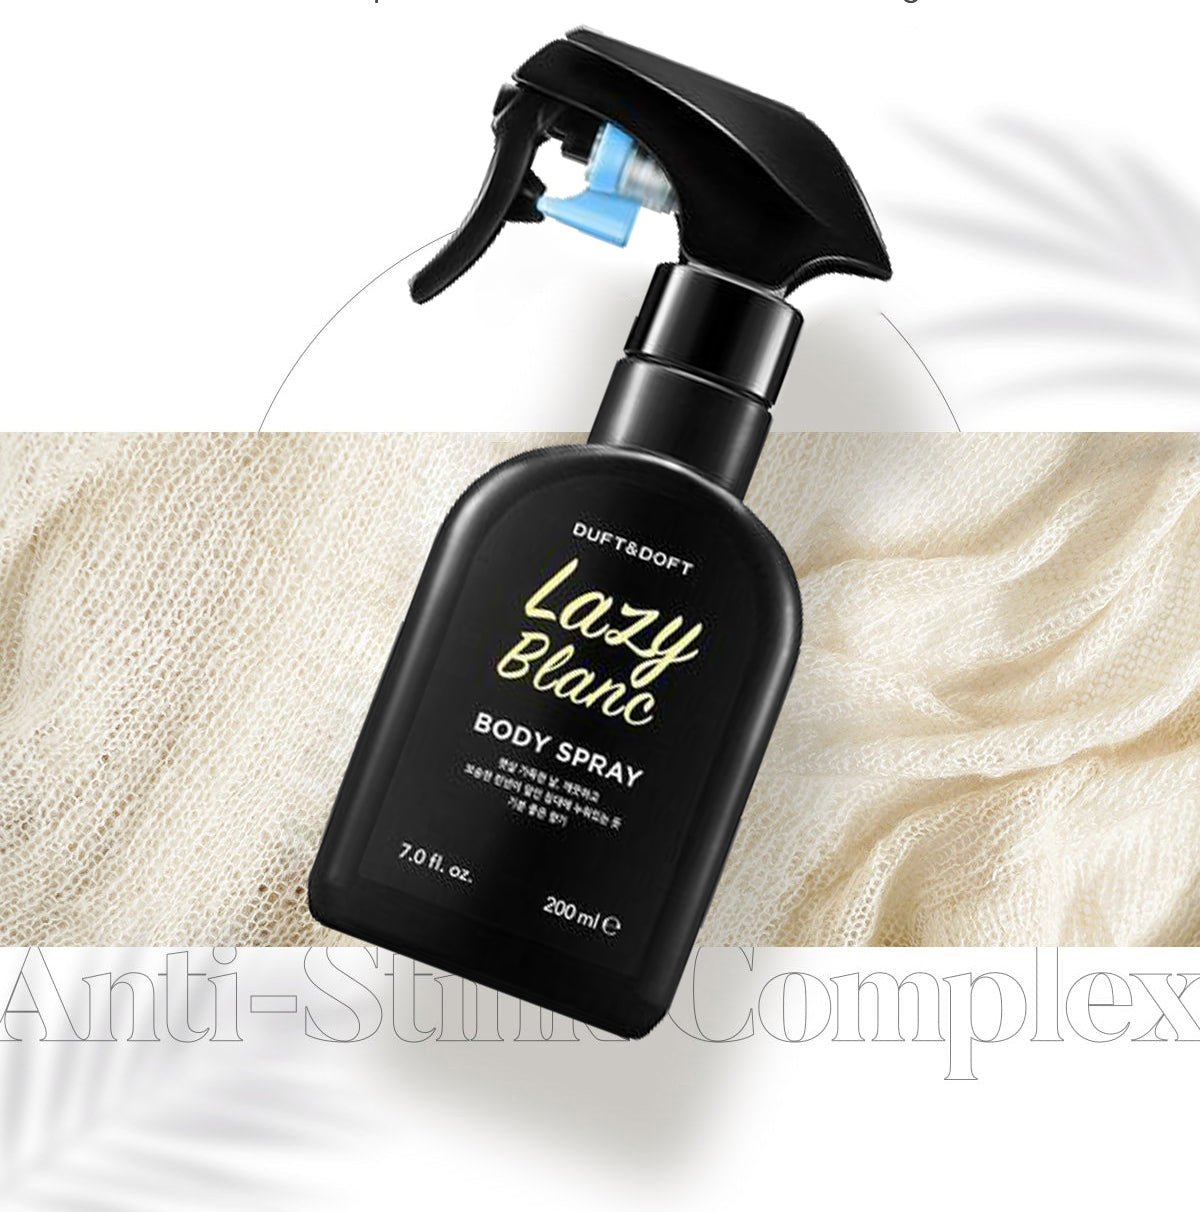 DUFT&DOFT Lazy Blanc Body Spray (200ml) - UShops